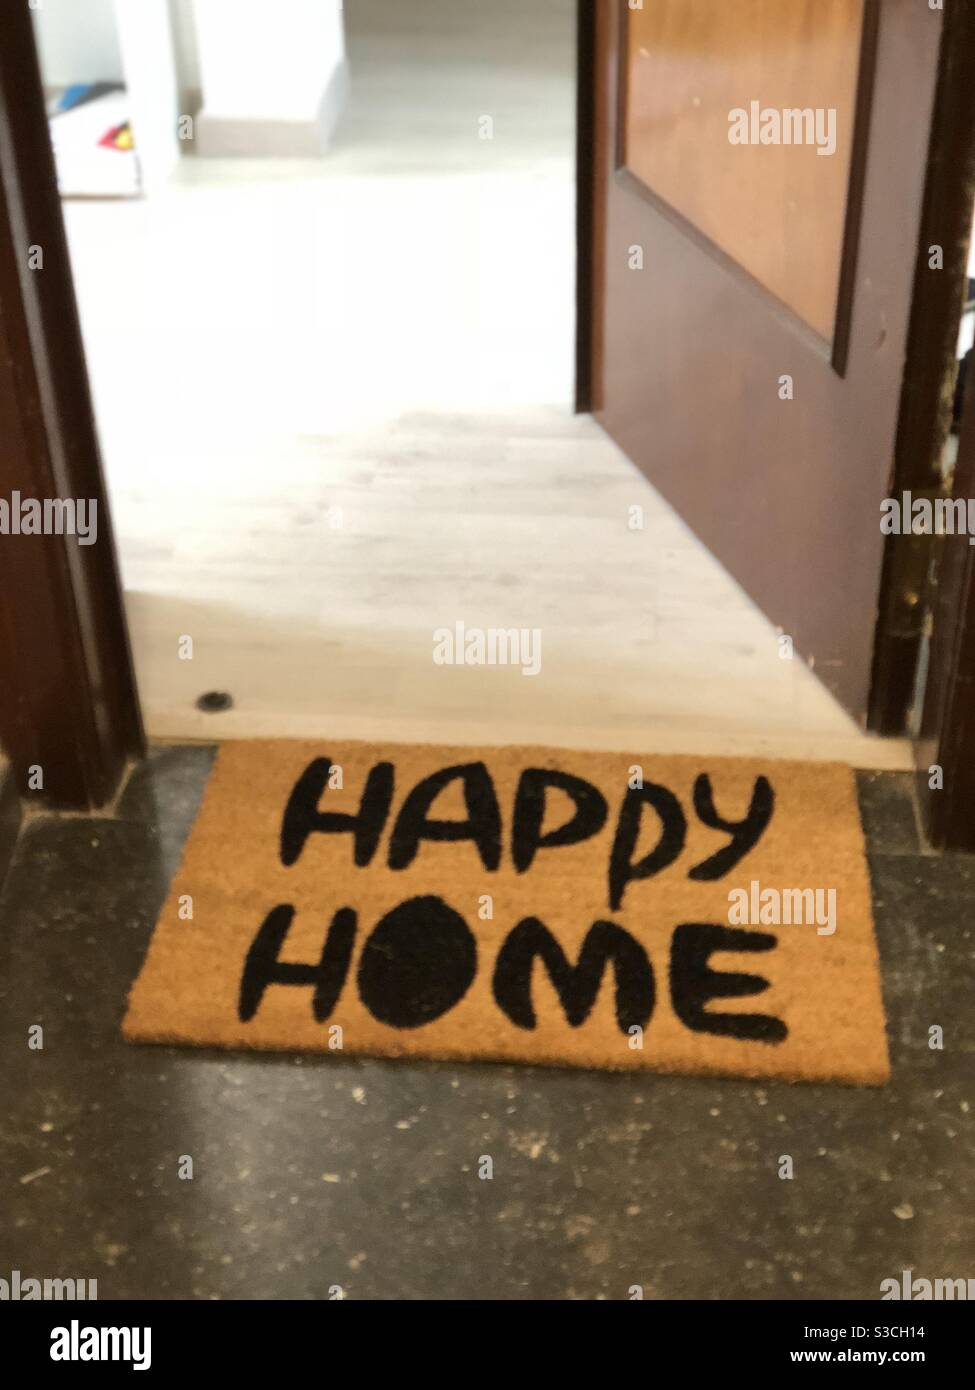 Happy home door mat Stock Photo